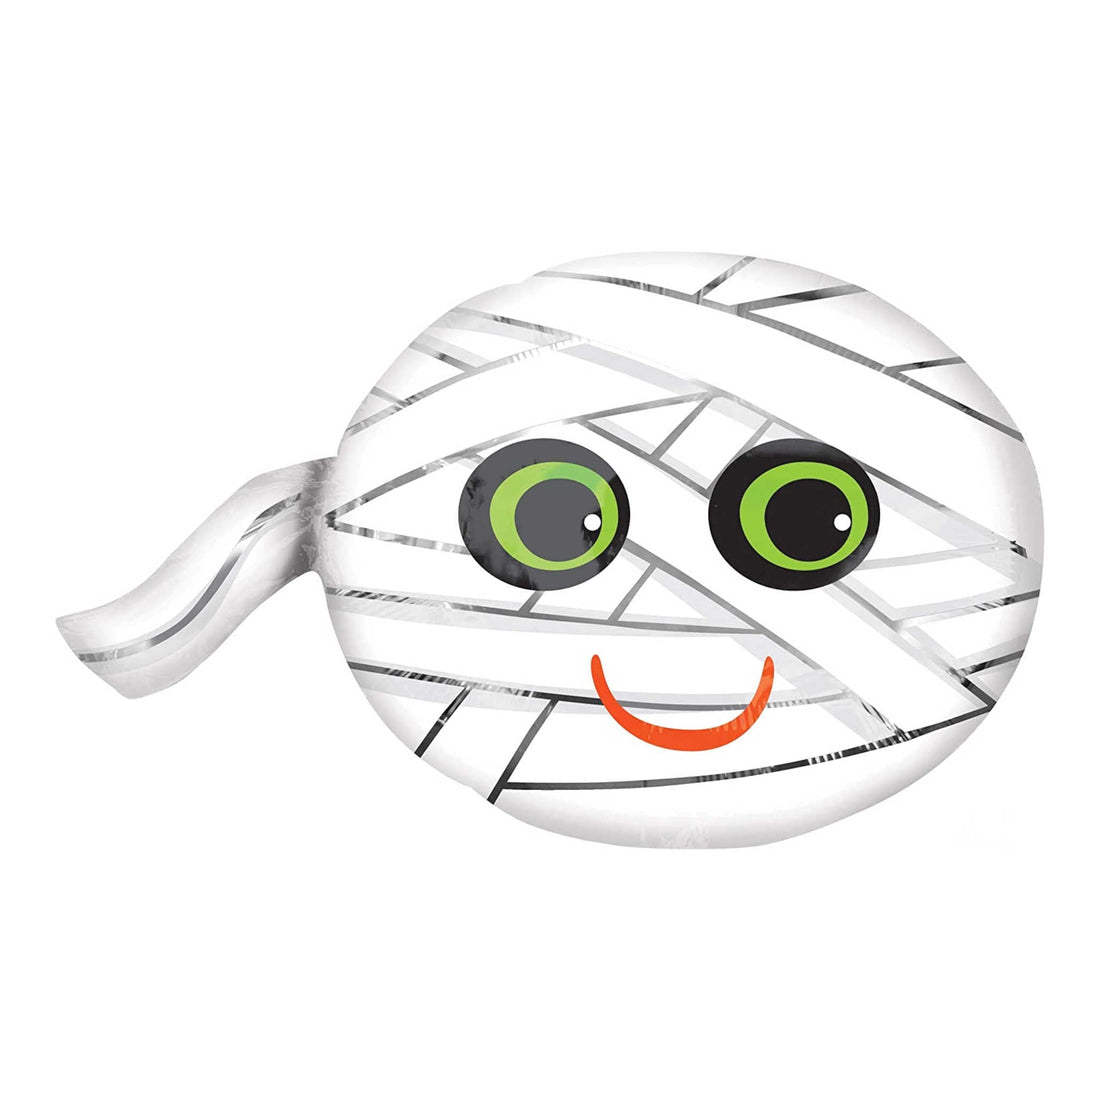 Happy Mummy Foil Balloon